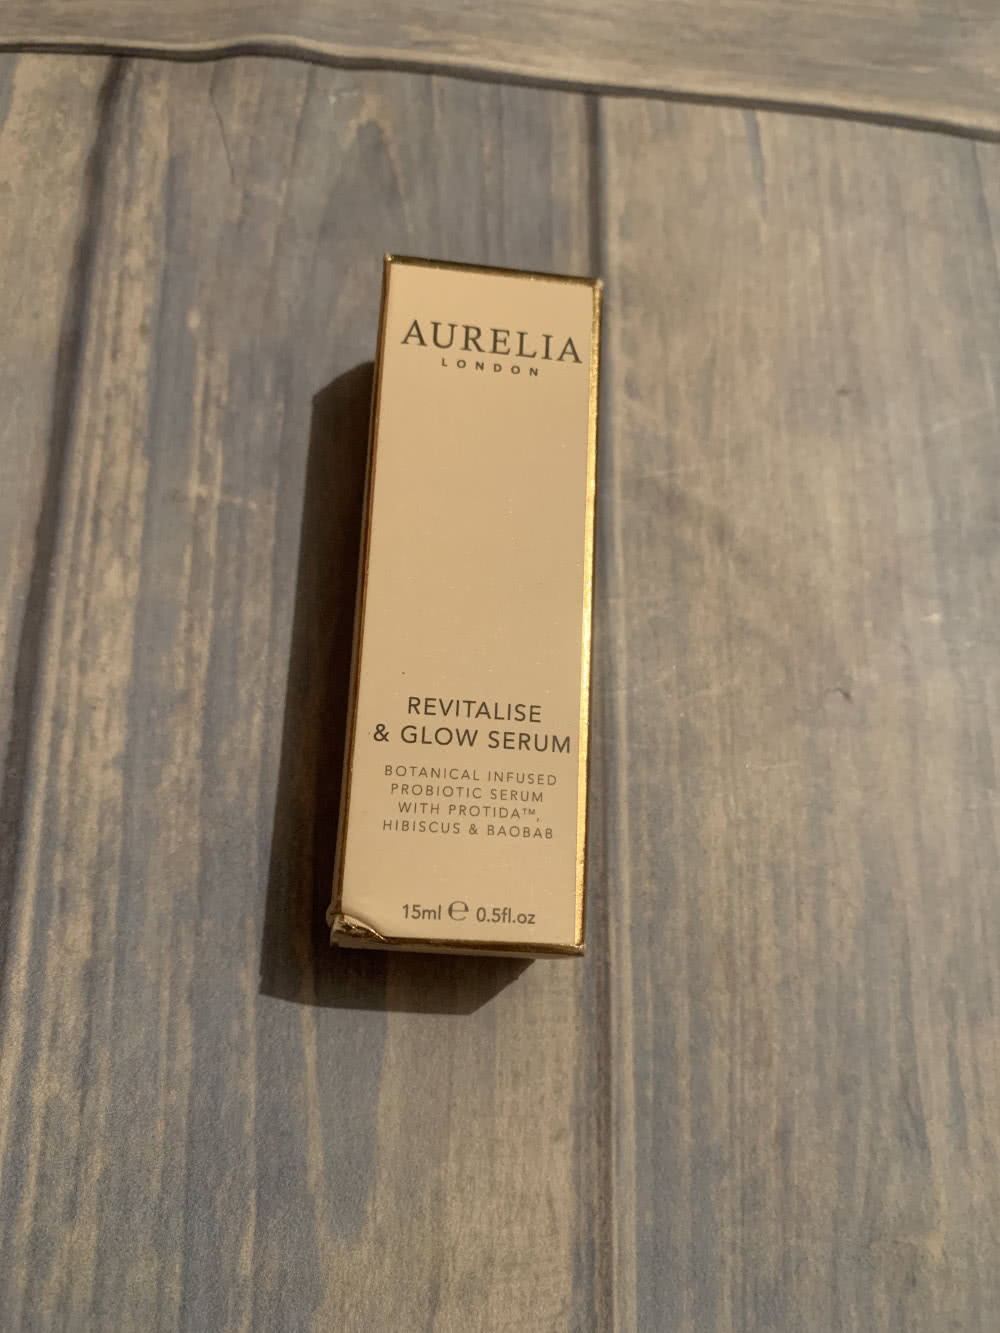 Aurelia London, Revitalise & Glow Serum, 15ml